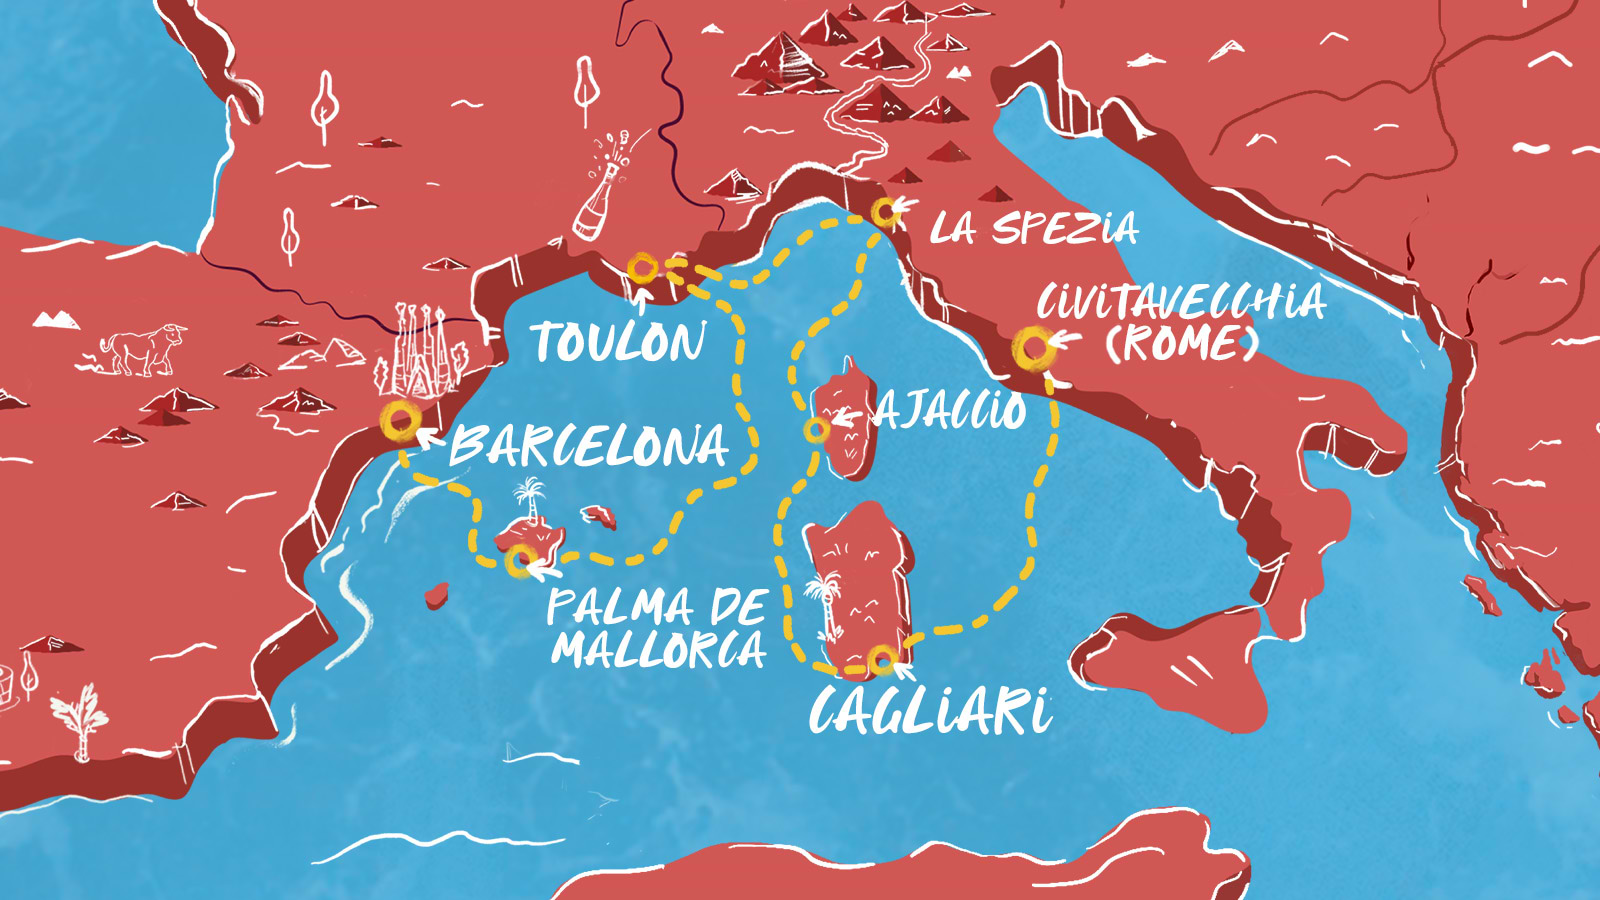 Map of Barcelona to Civitavecchia itinerary